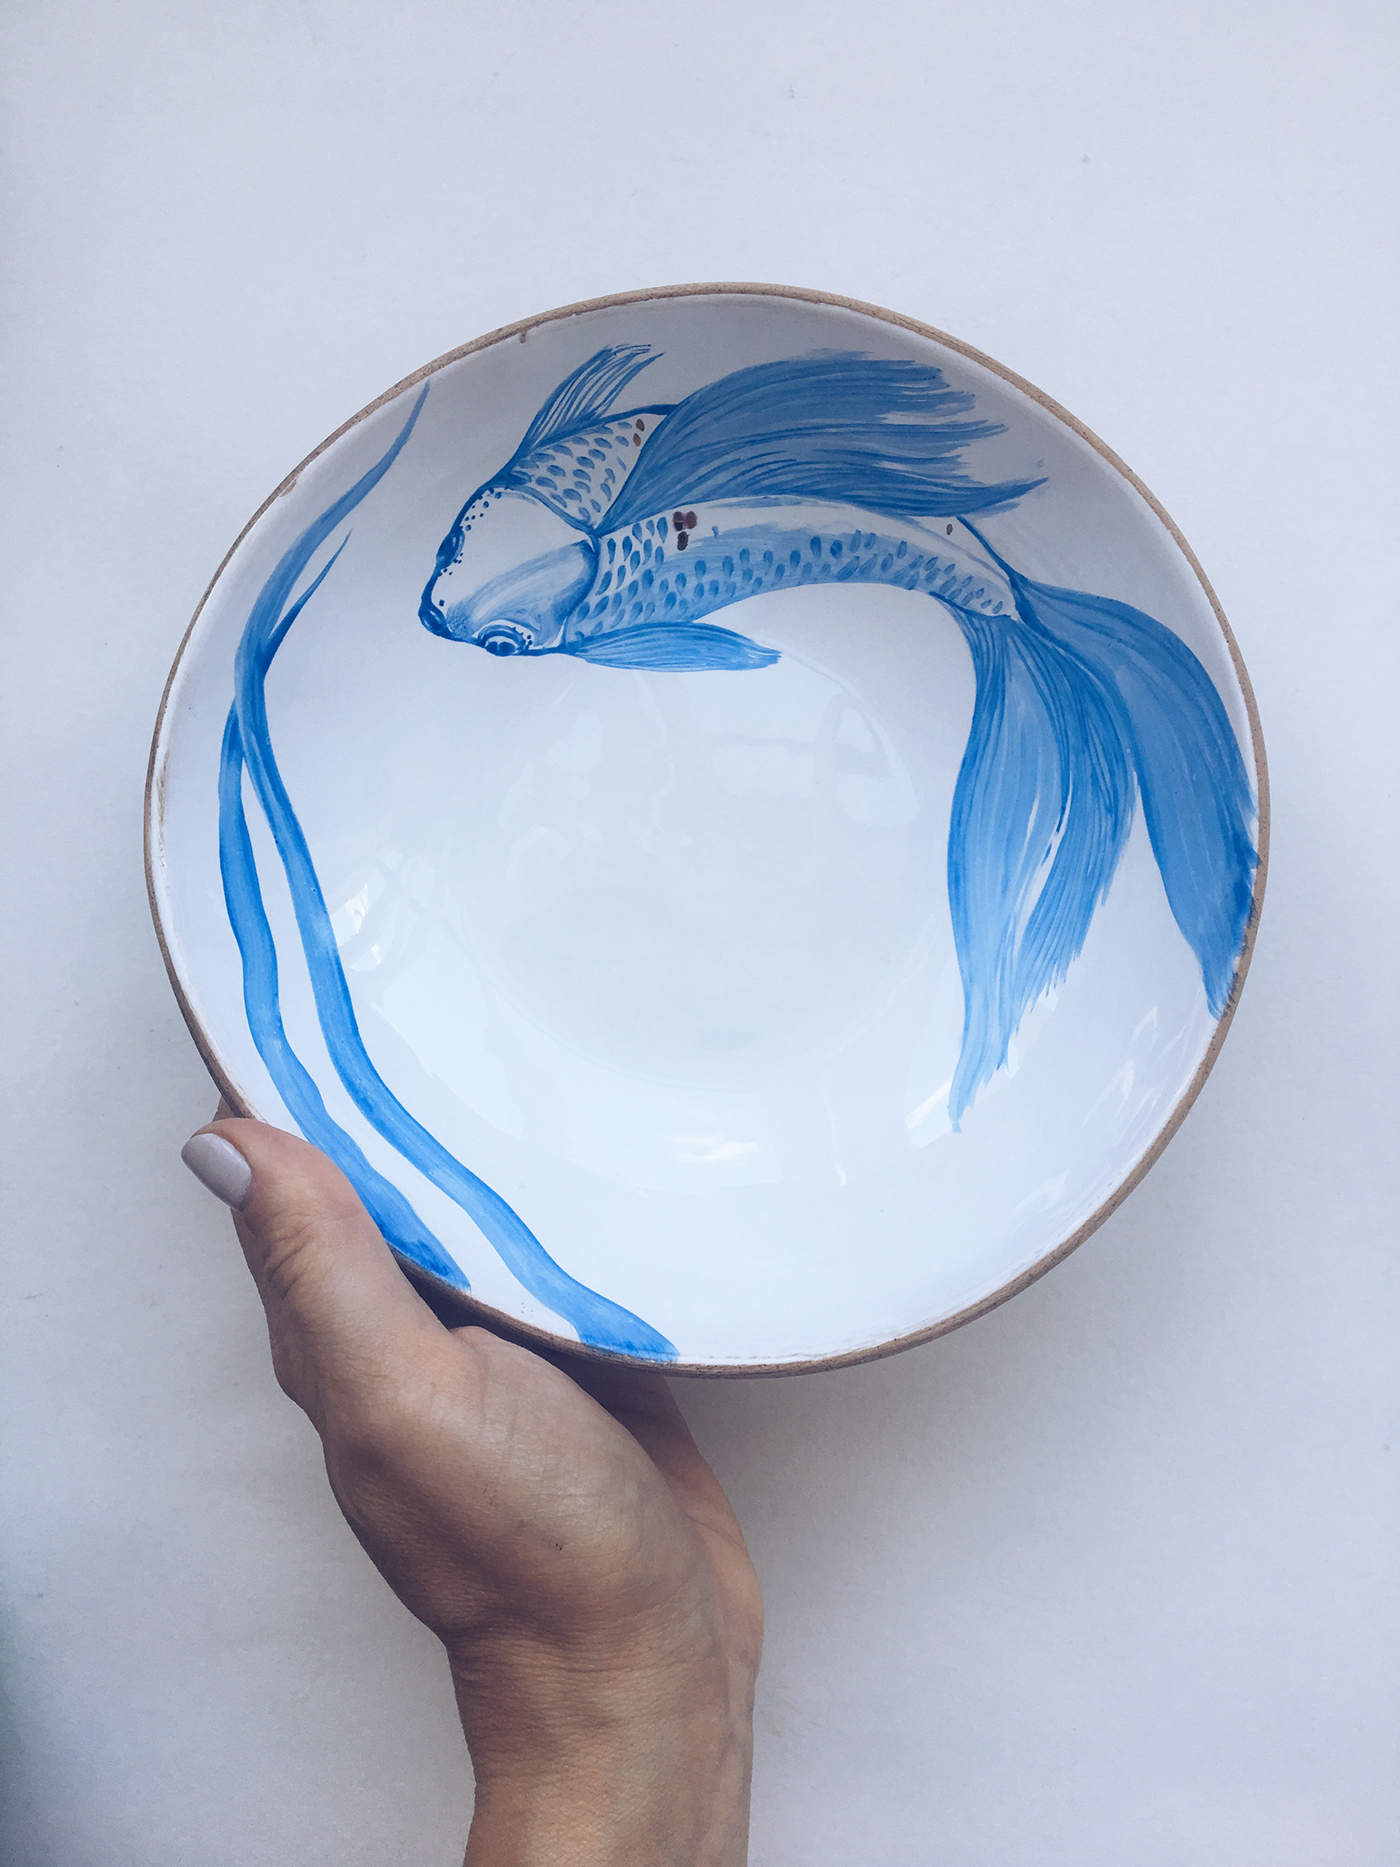 bowl ceramic tableware plate